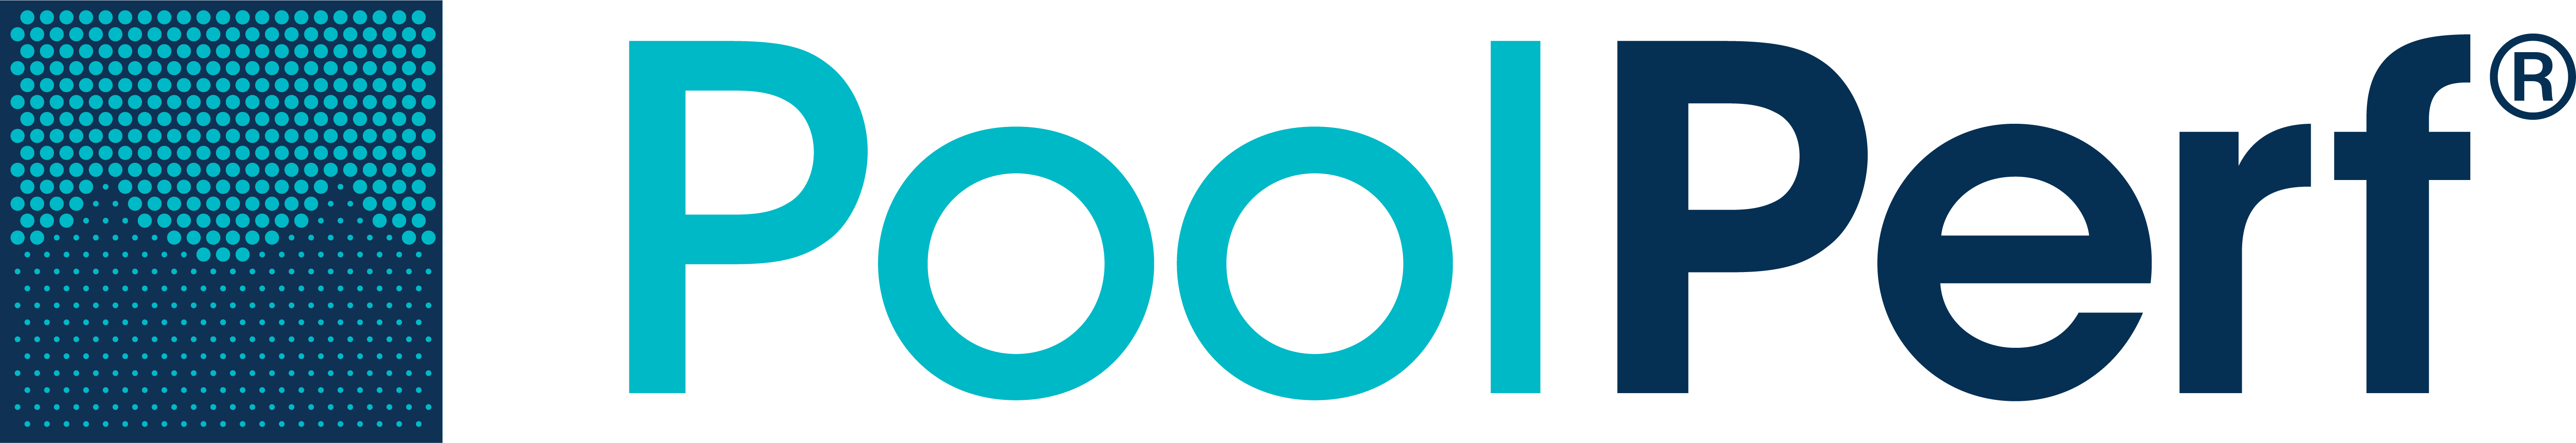 Poolperf Logo